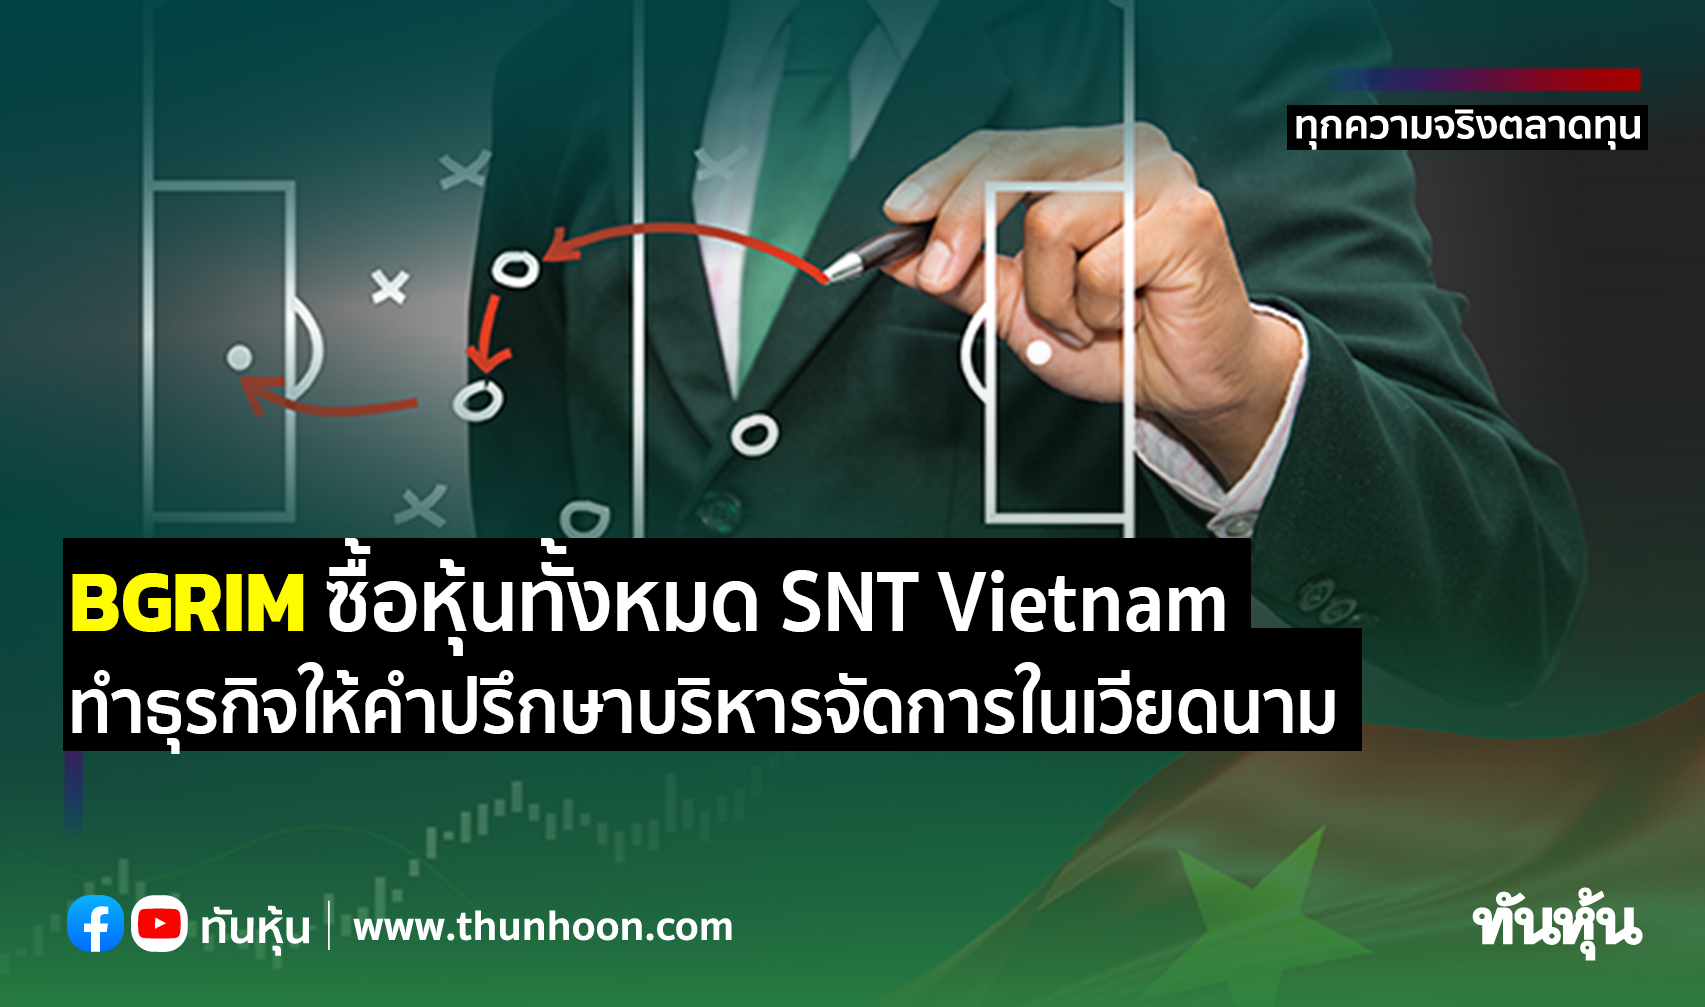 BGRIM ซื้อหุ้นทั้งหมด SNT Vietnam ทำธุรกิจให้คำปรึกษาบริหารจัดการในเวียดนาม